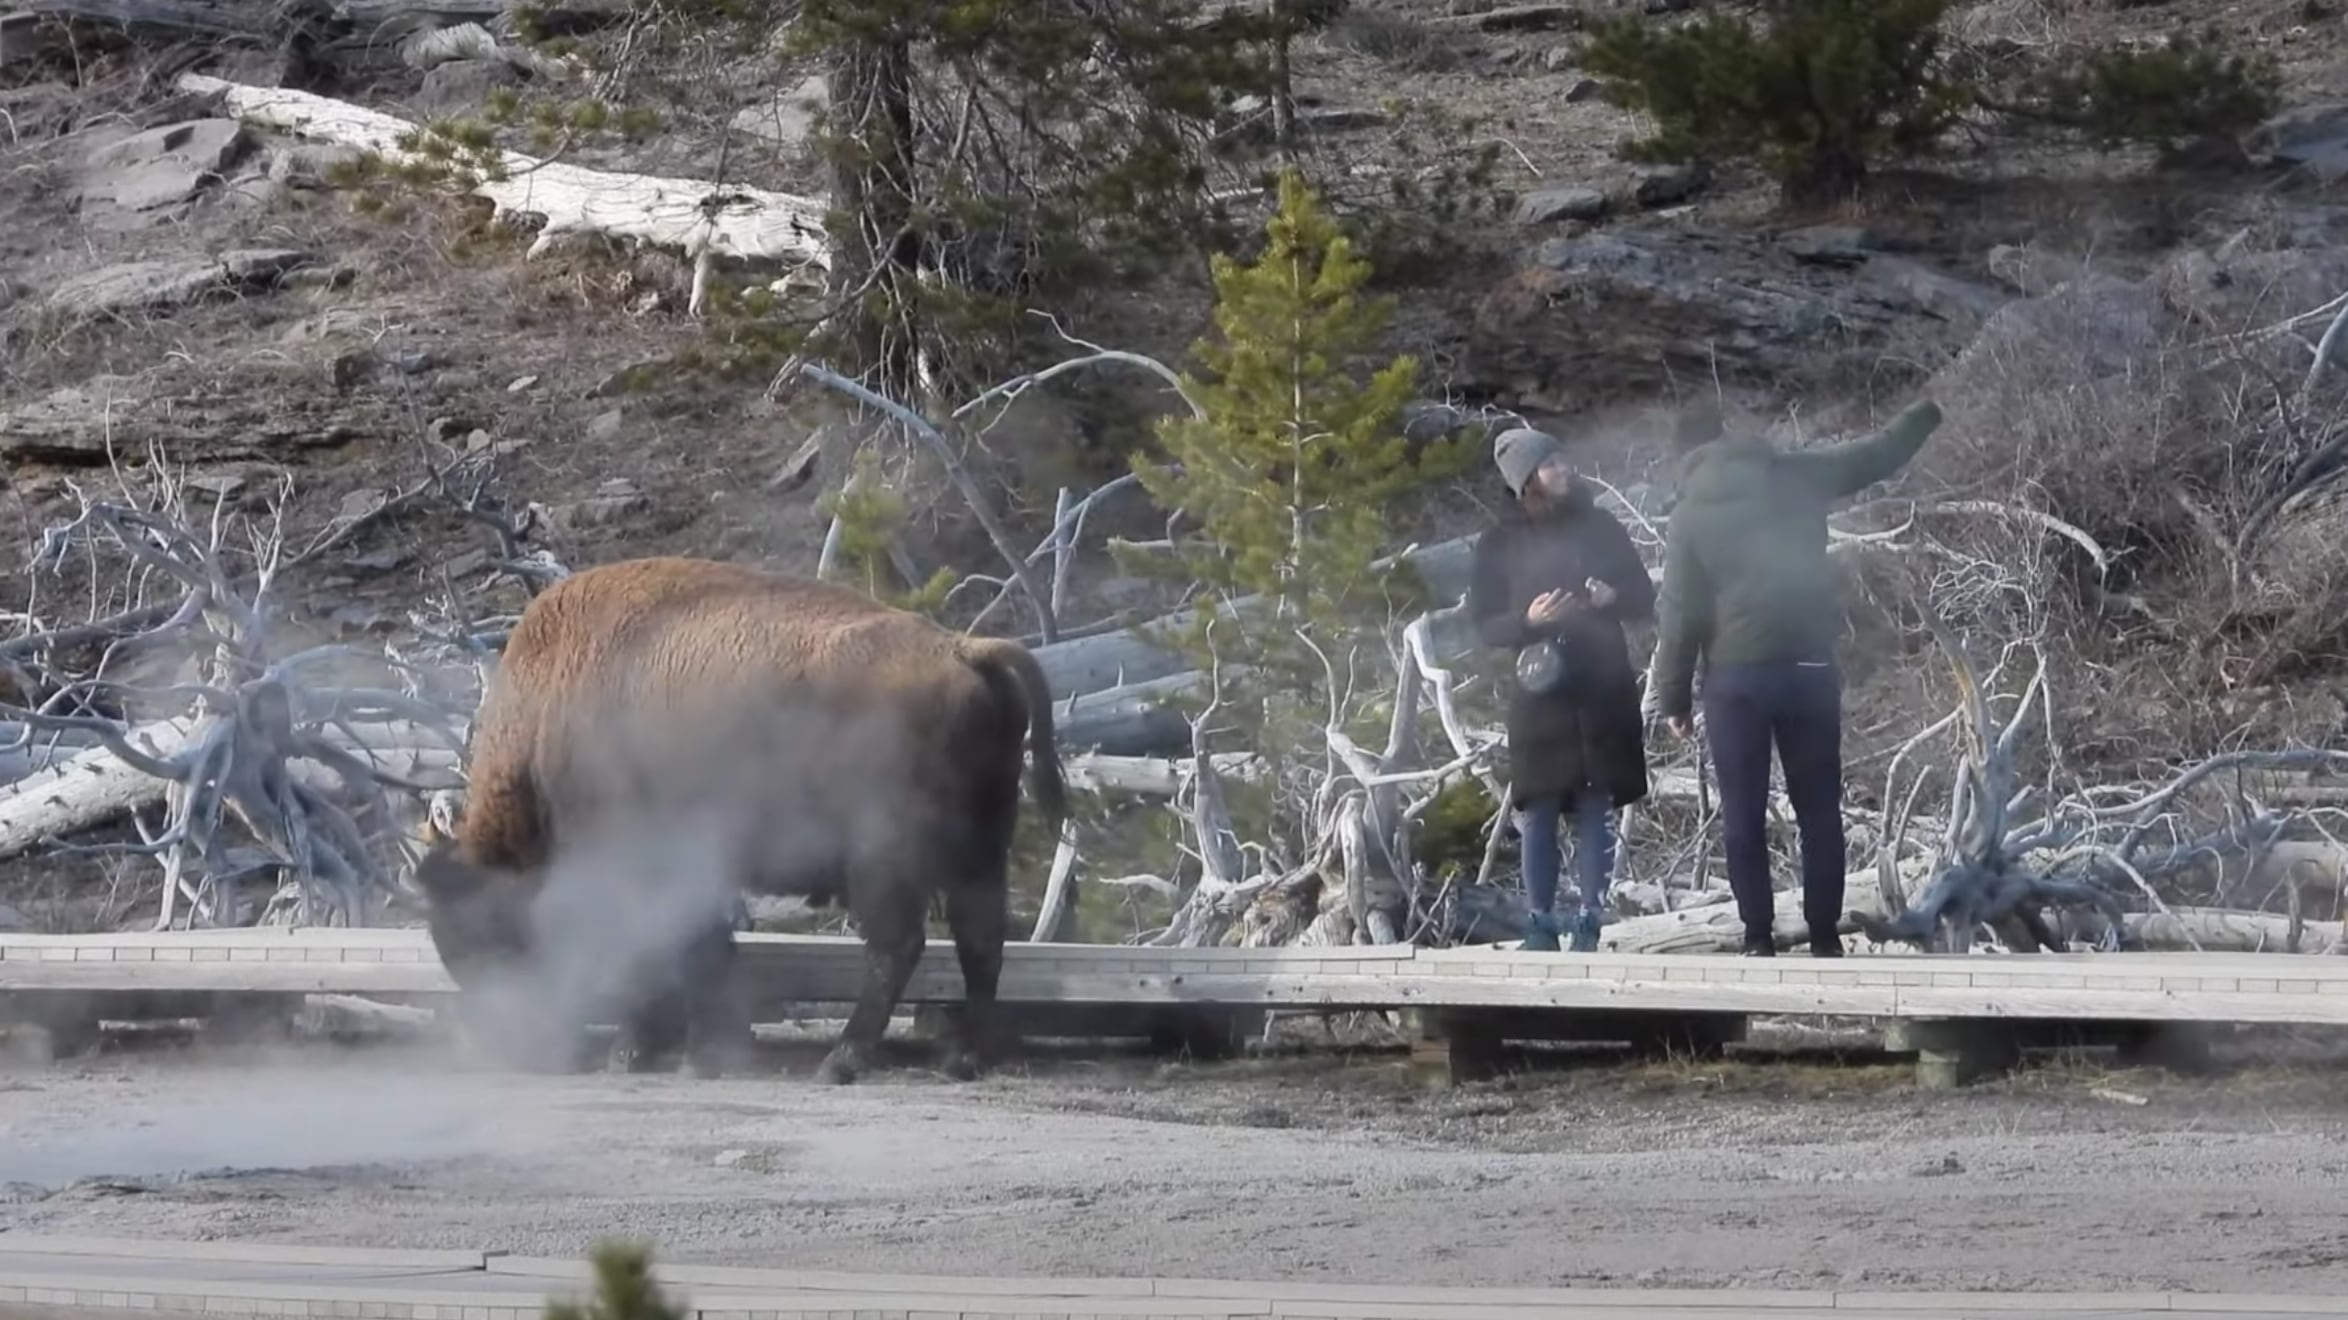 Vídeo registra momento em que casal ignora o perigo e se aproxima de búfalo selvagem para tirar selfie